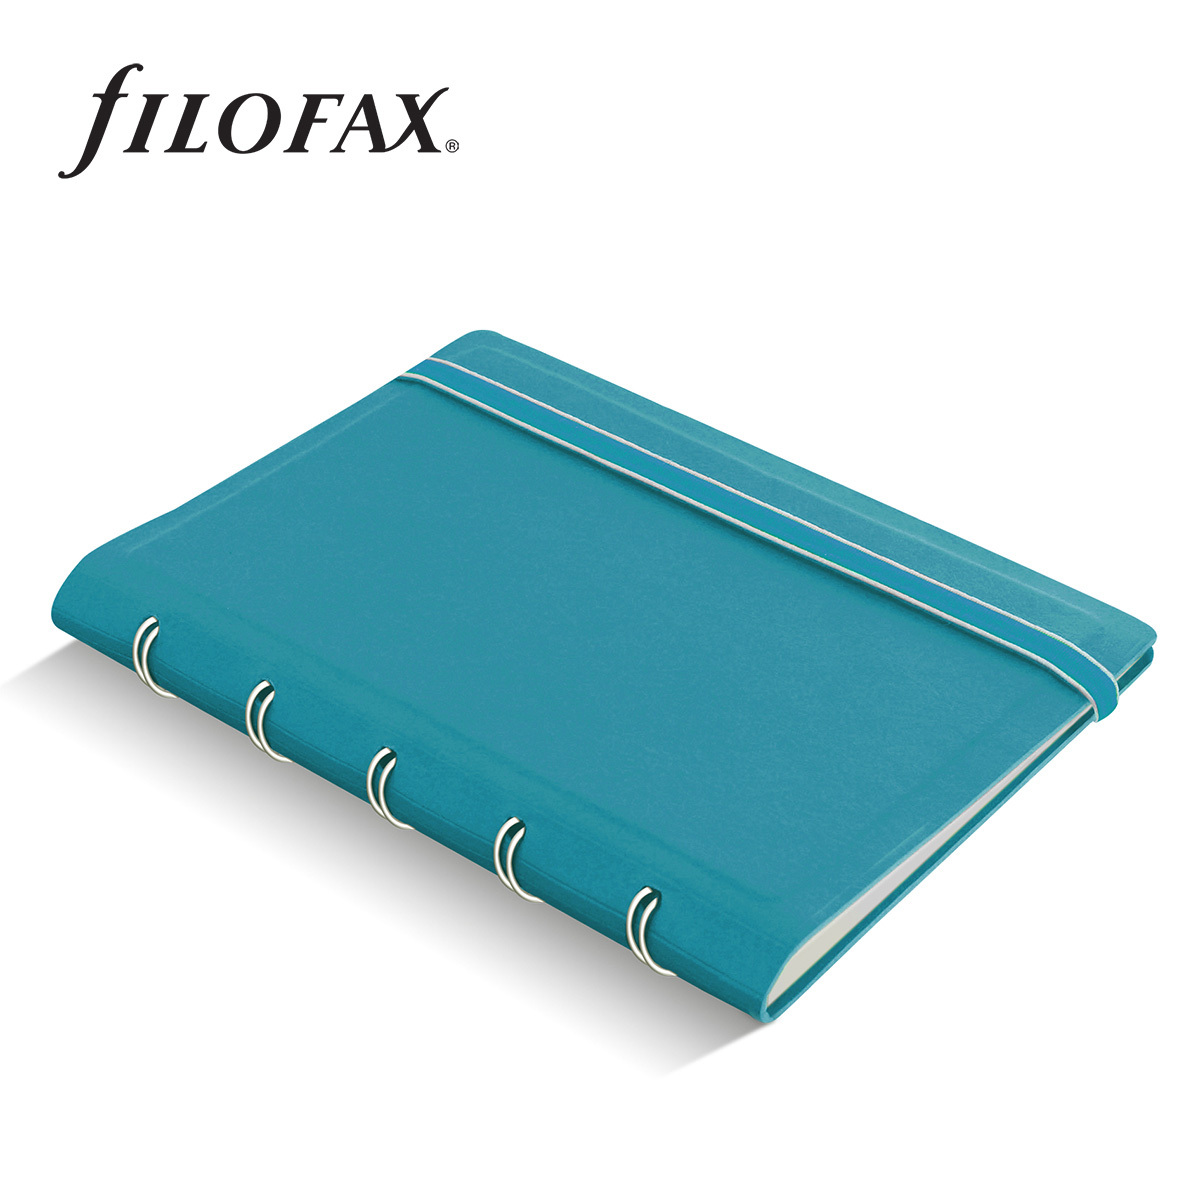 Filofax Notebook Classic Pocket Aqua